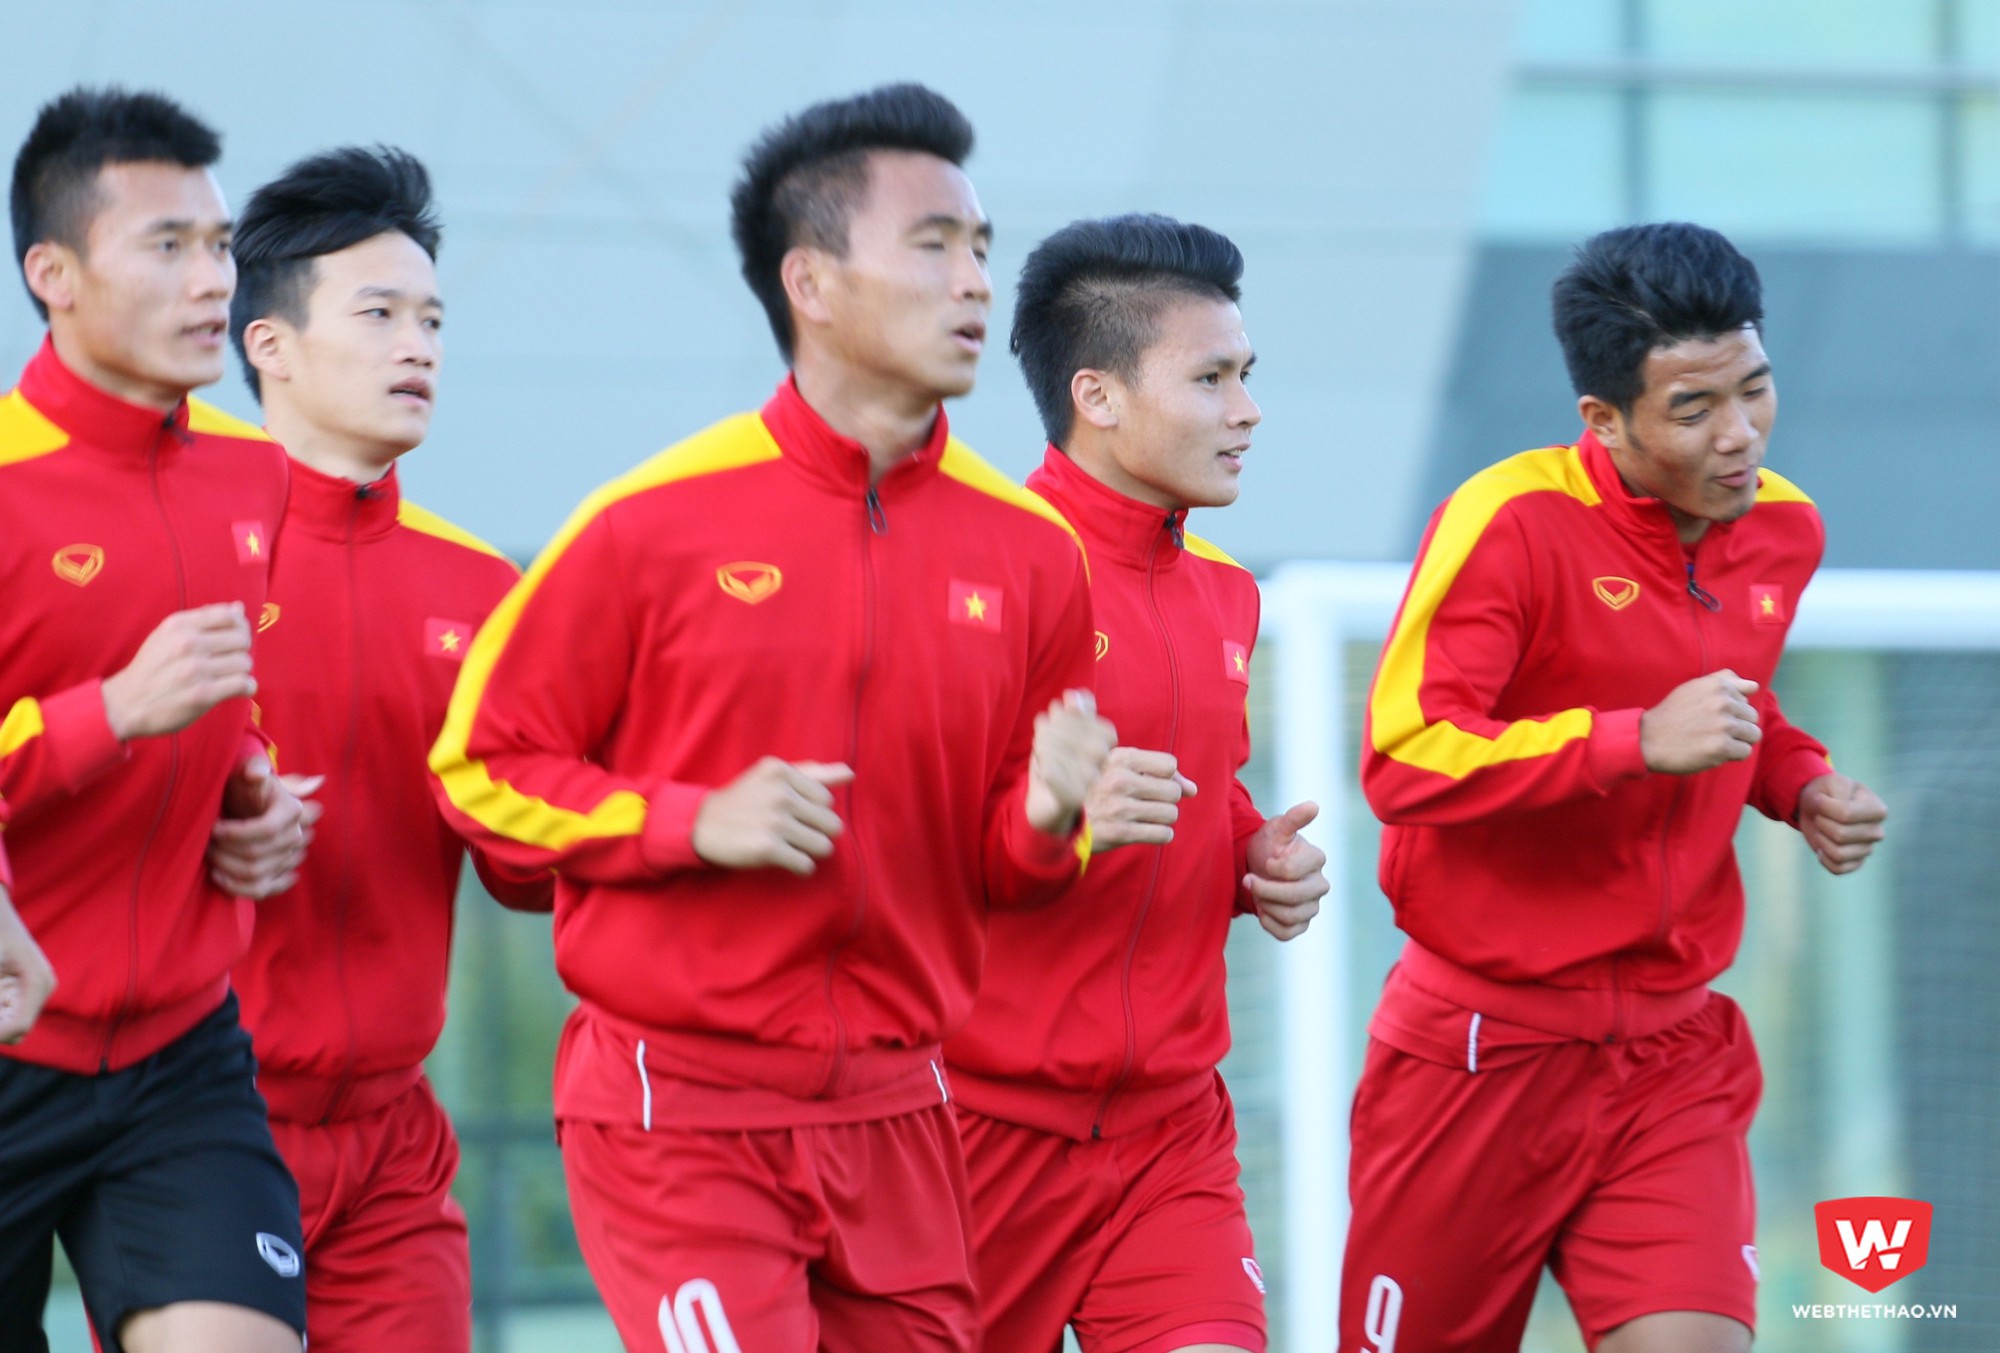 Theo ông Tuấn, U20 Việt Nam cần phải ghi được bàn thắng rồi mới nghĩ đến chuyện khác. Ảnh: Quang Thịnh.